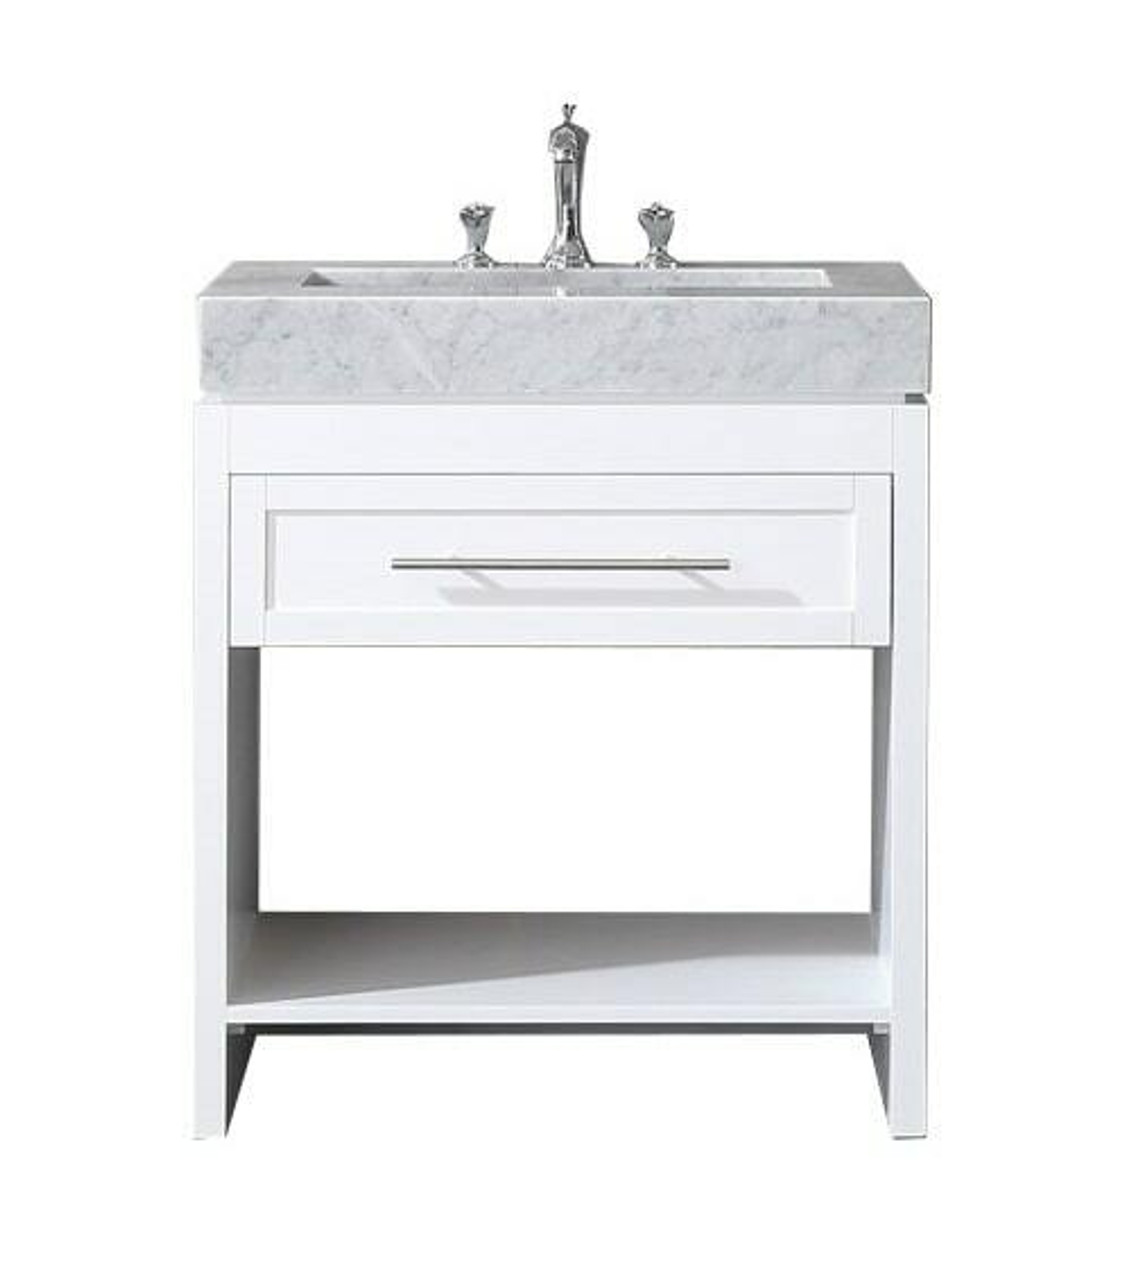 Venetian 36 In Single Sink Bathroom Vanity In White With Carrera